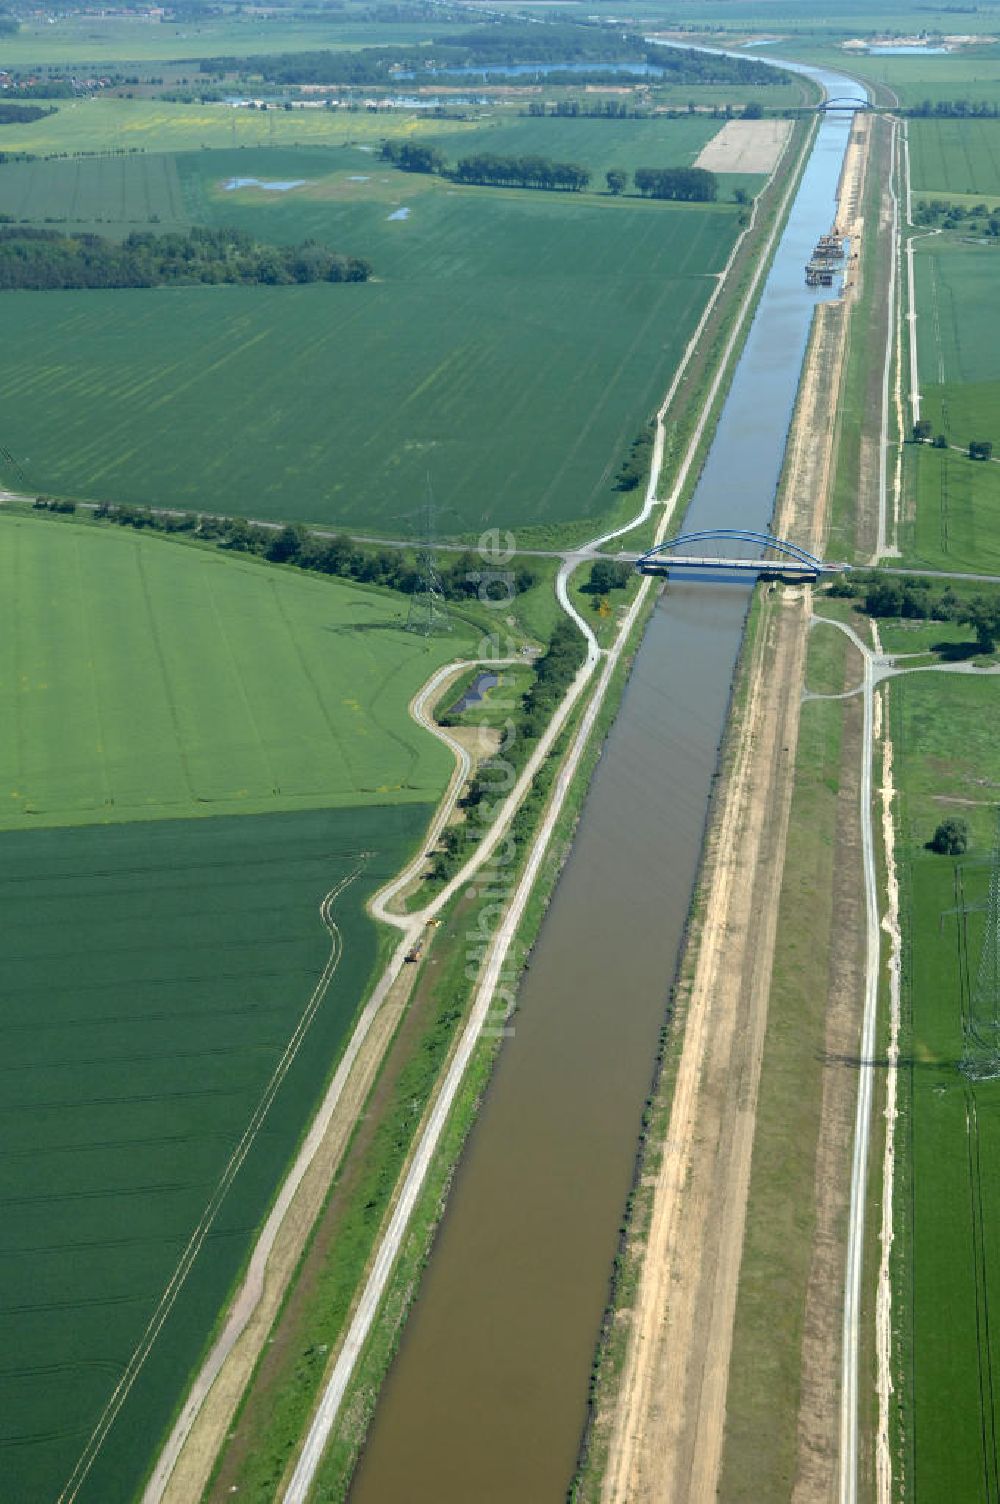 Vahldorf aus der Vogelperspektive: Ausbau der Uferbereiche des Mittelandkanals in Sachsen - Anhalt